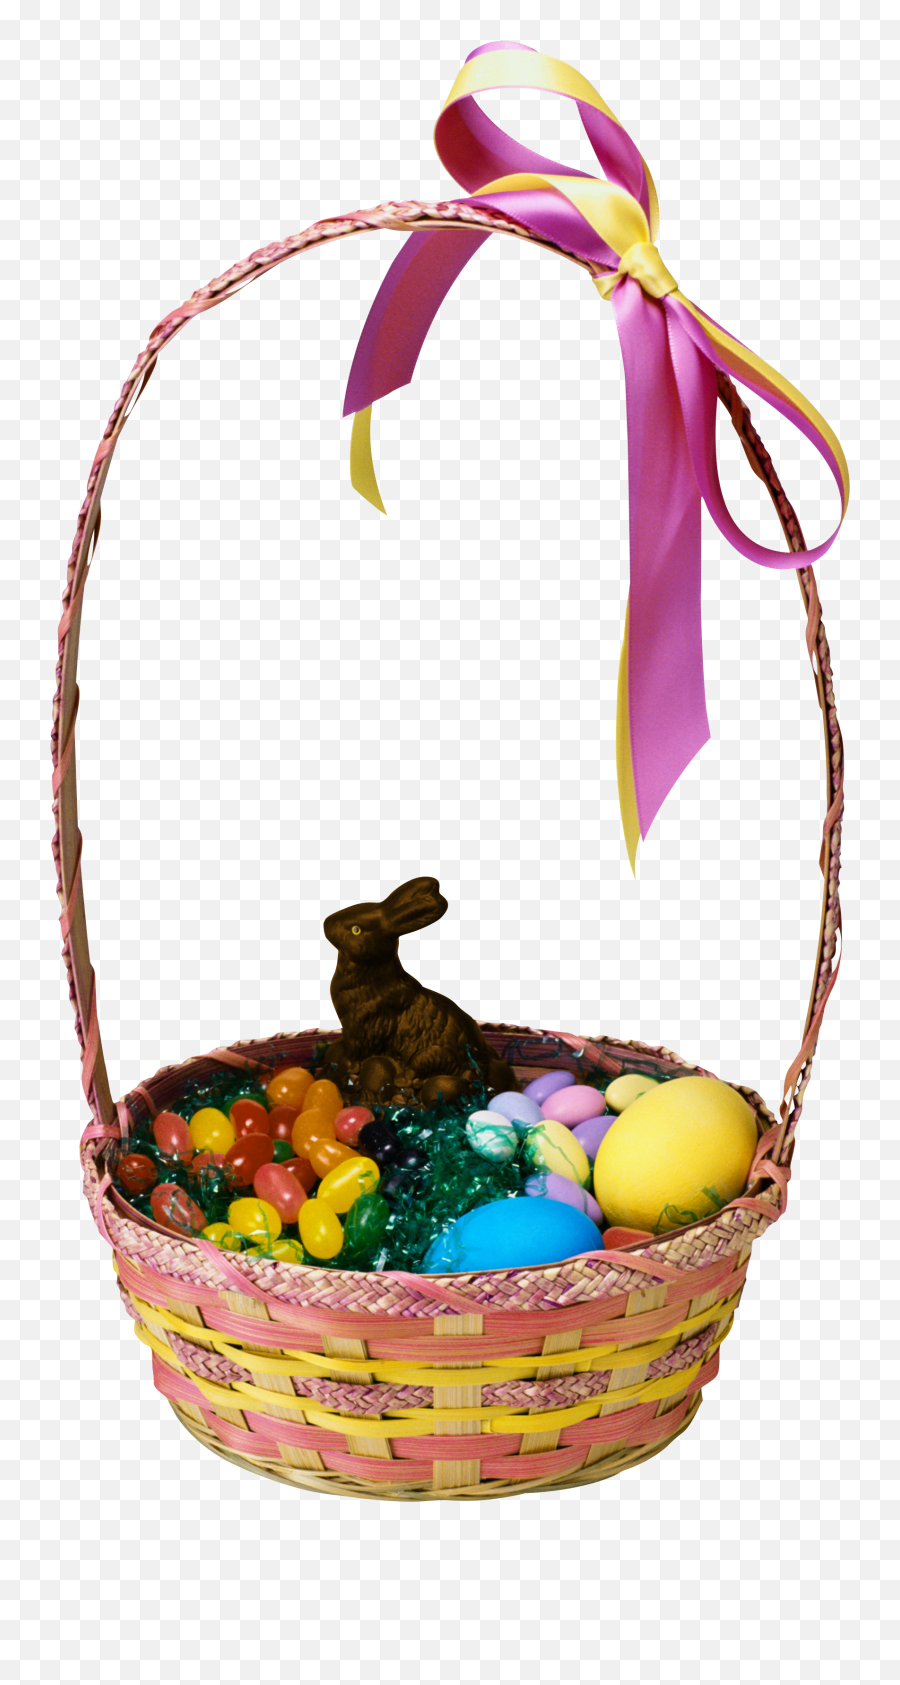 Easter Bunny Easter Basket - Easter Basket With A Bunny Emoji,Easter Egg Basket Clipart